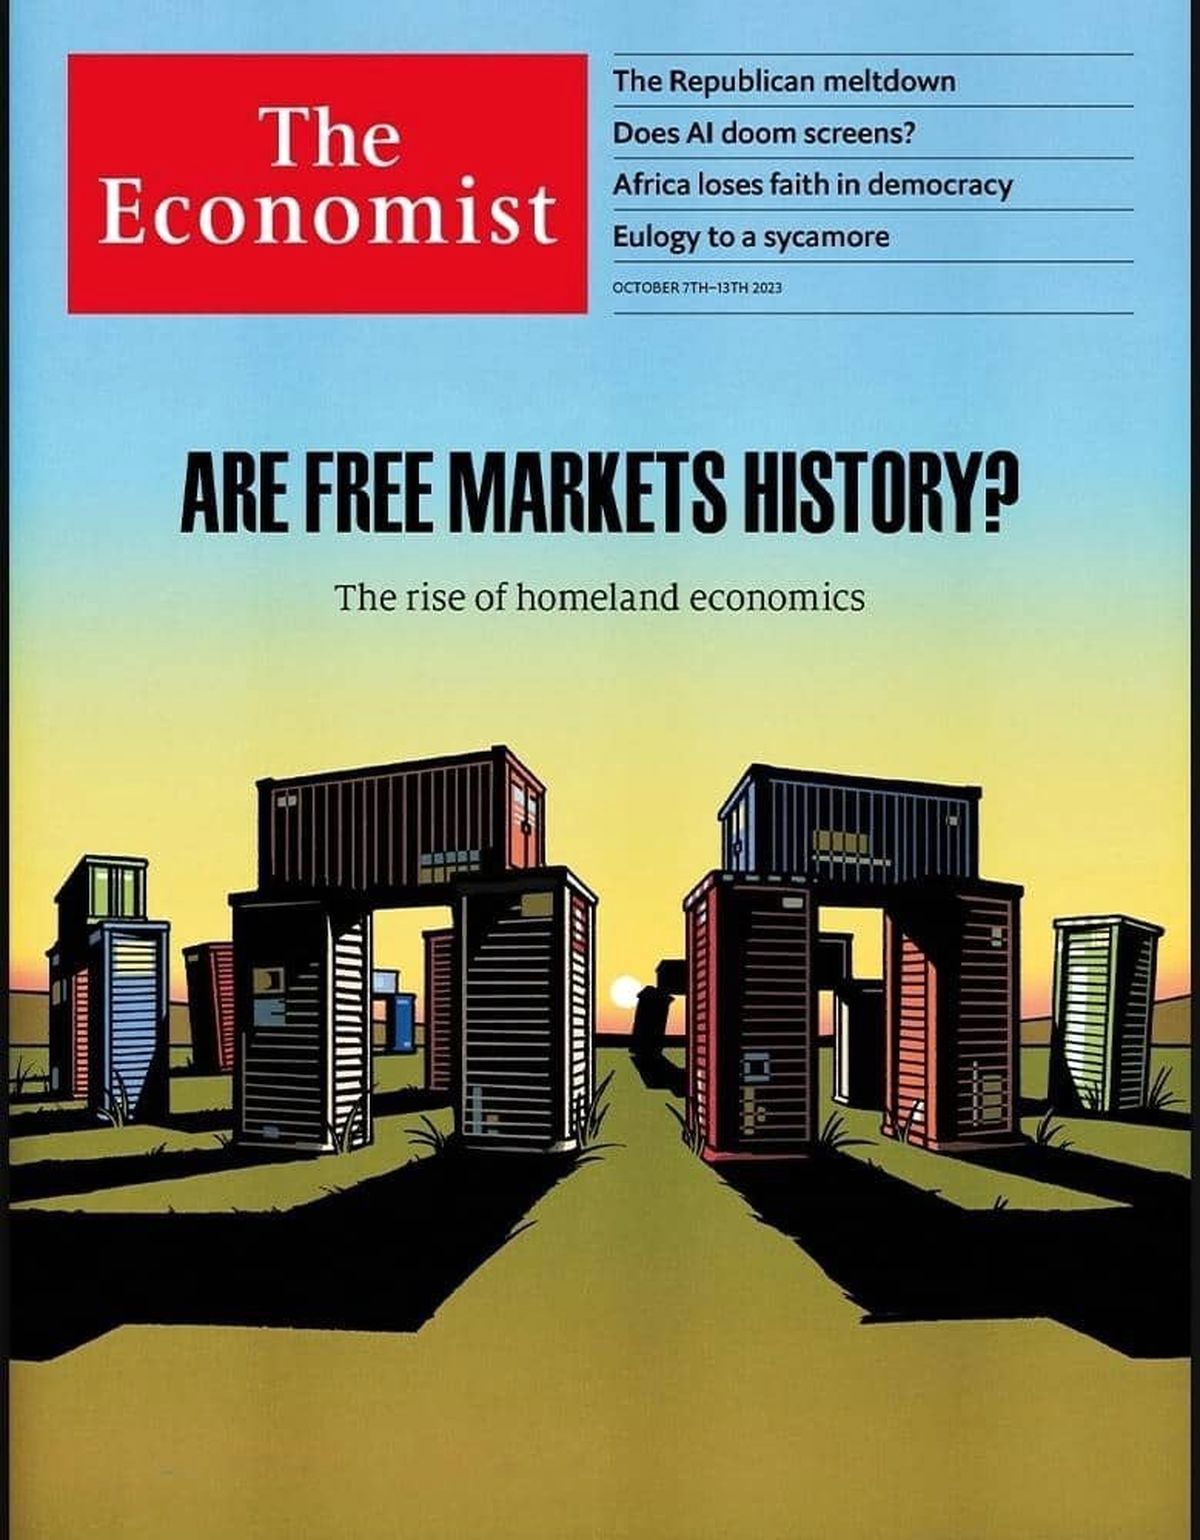 هشدار اکونومیست نسبت به حذف بازارهای آزاد در جهان